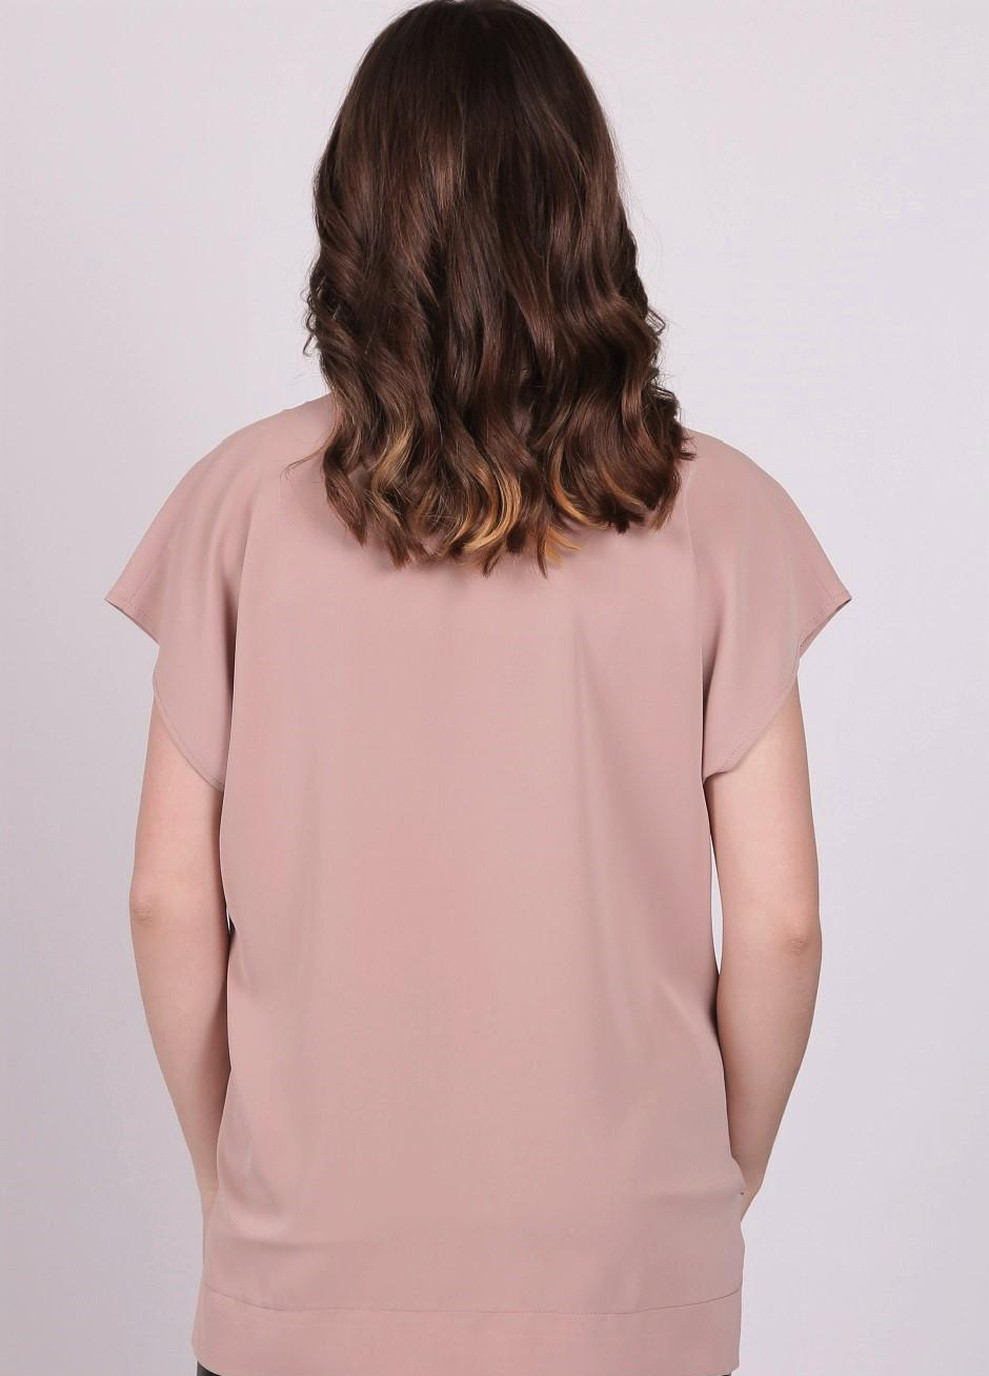 Світло-коричнева блузка жіноча 0071 однотонний софт капучино Актуаль